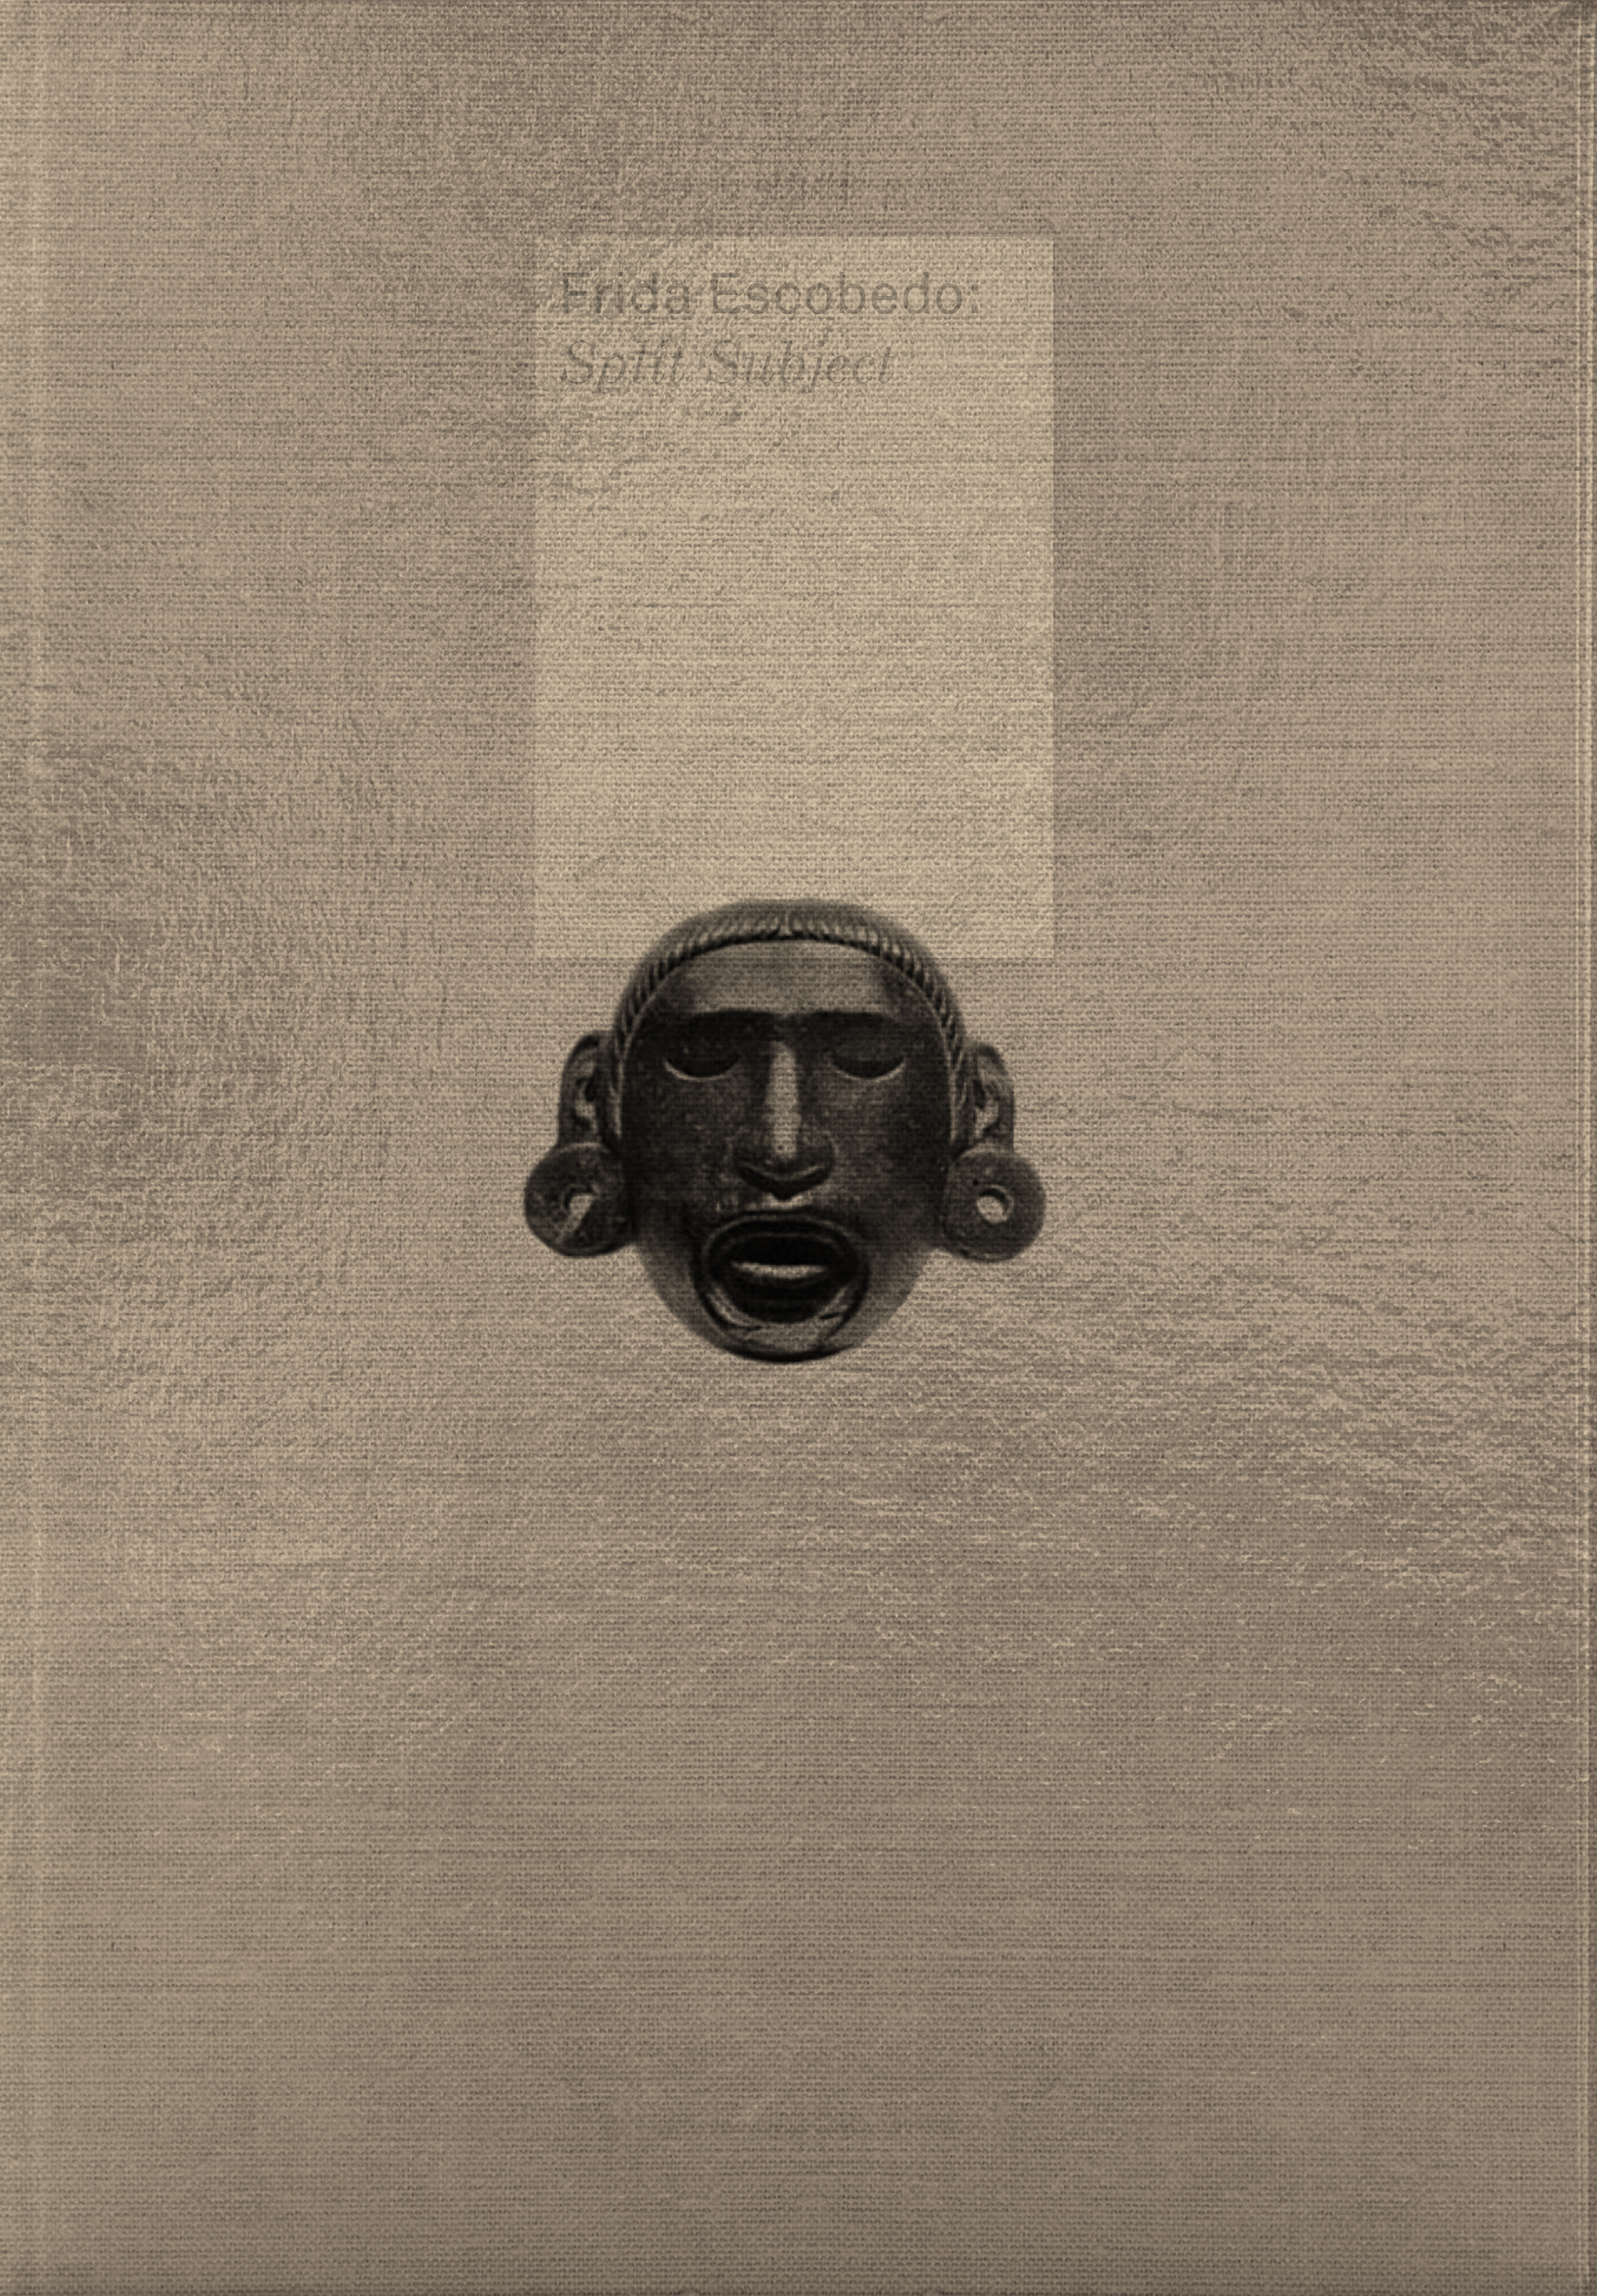 cover of Frida Escobedo: Split Subject